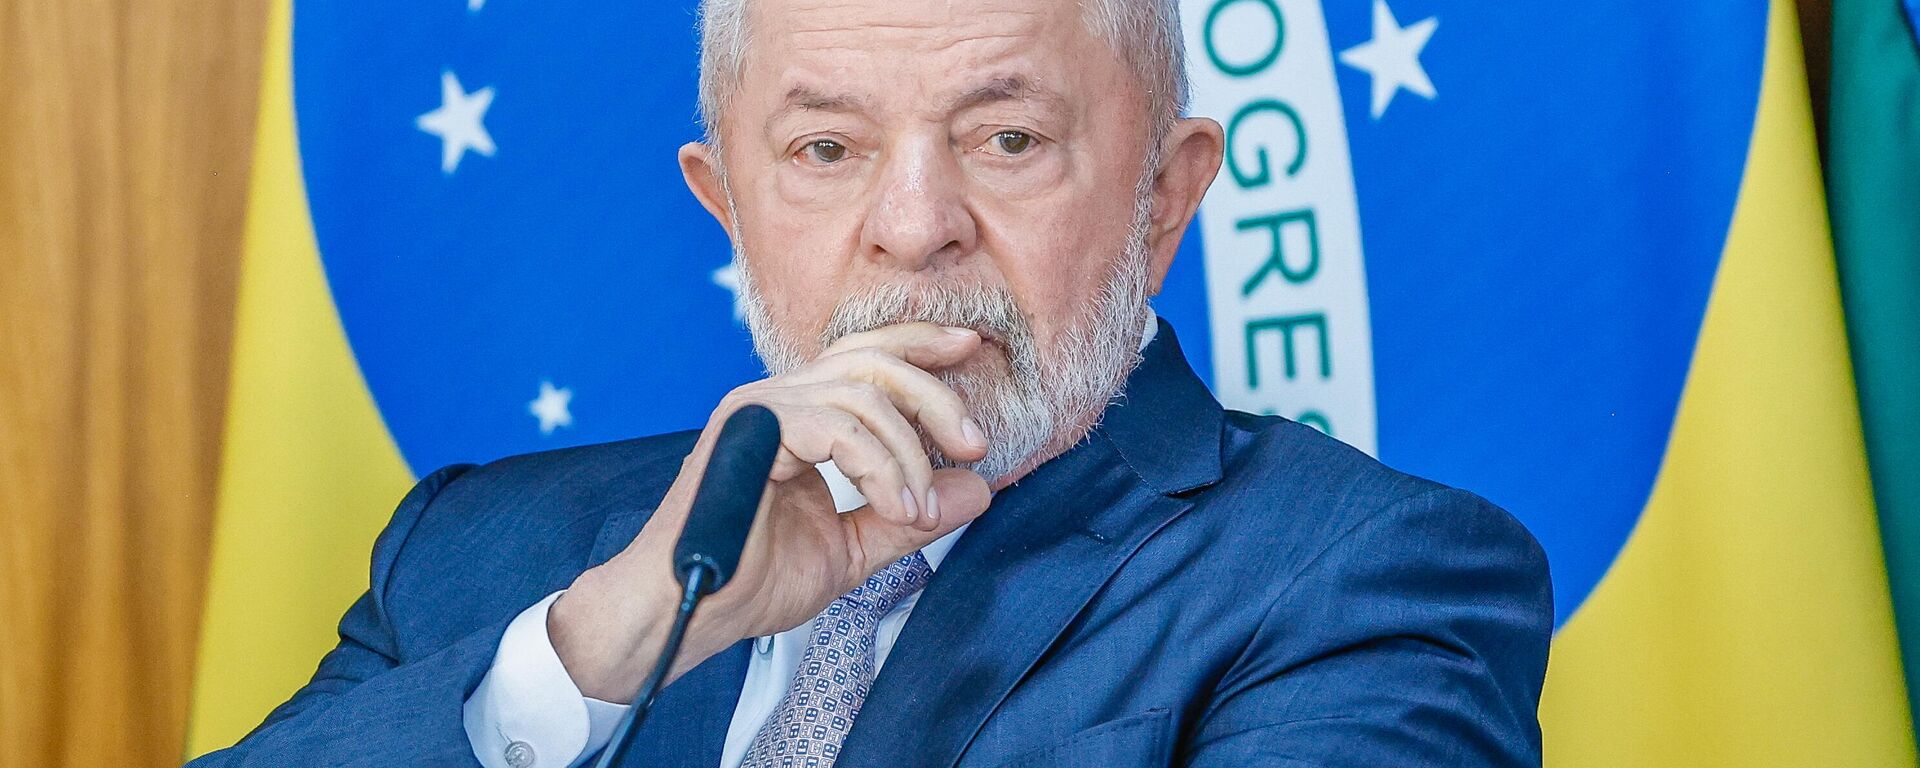 O presidente Luiz Inácio Lula da Silva durante reunião de relançamento do Conselho Nacional de Desenvolvimento Industrial (CNDI), em 6 de julho de 2023 - Sputnik Brasil, 1920, 06.07.2023